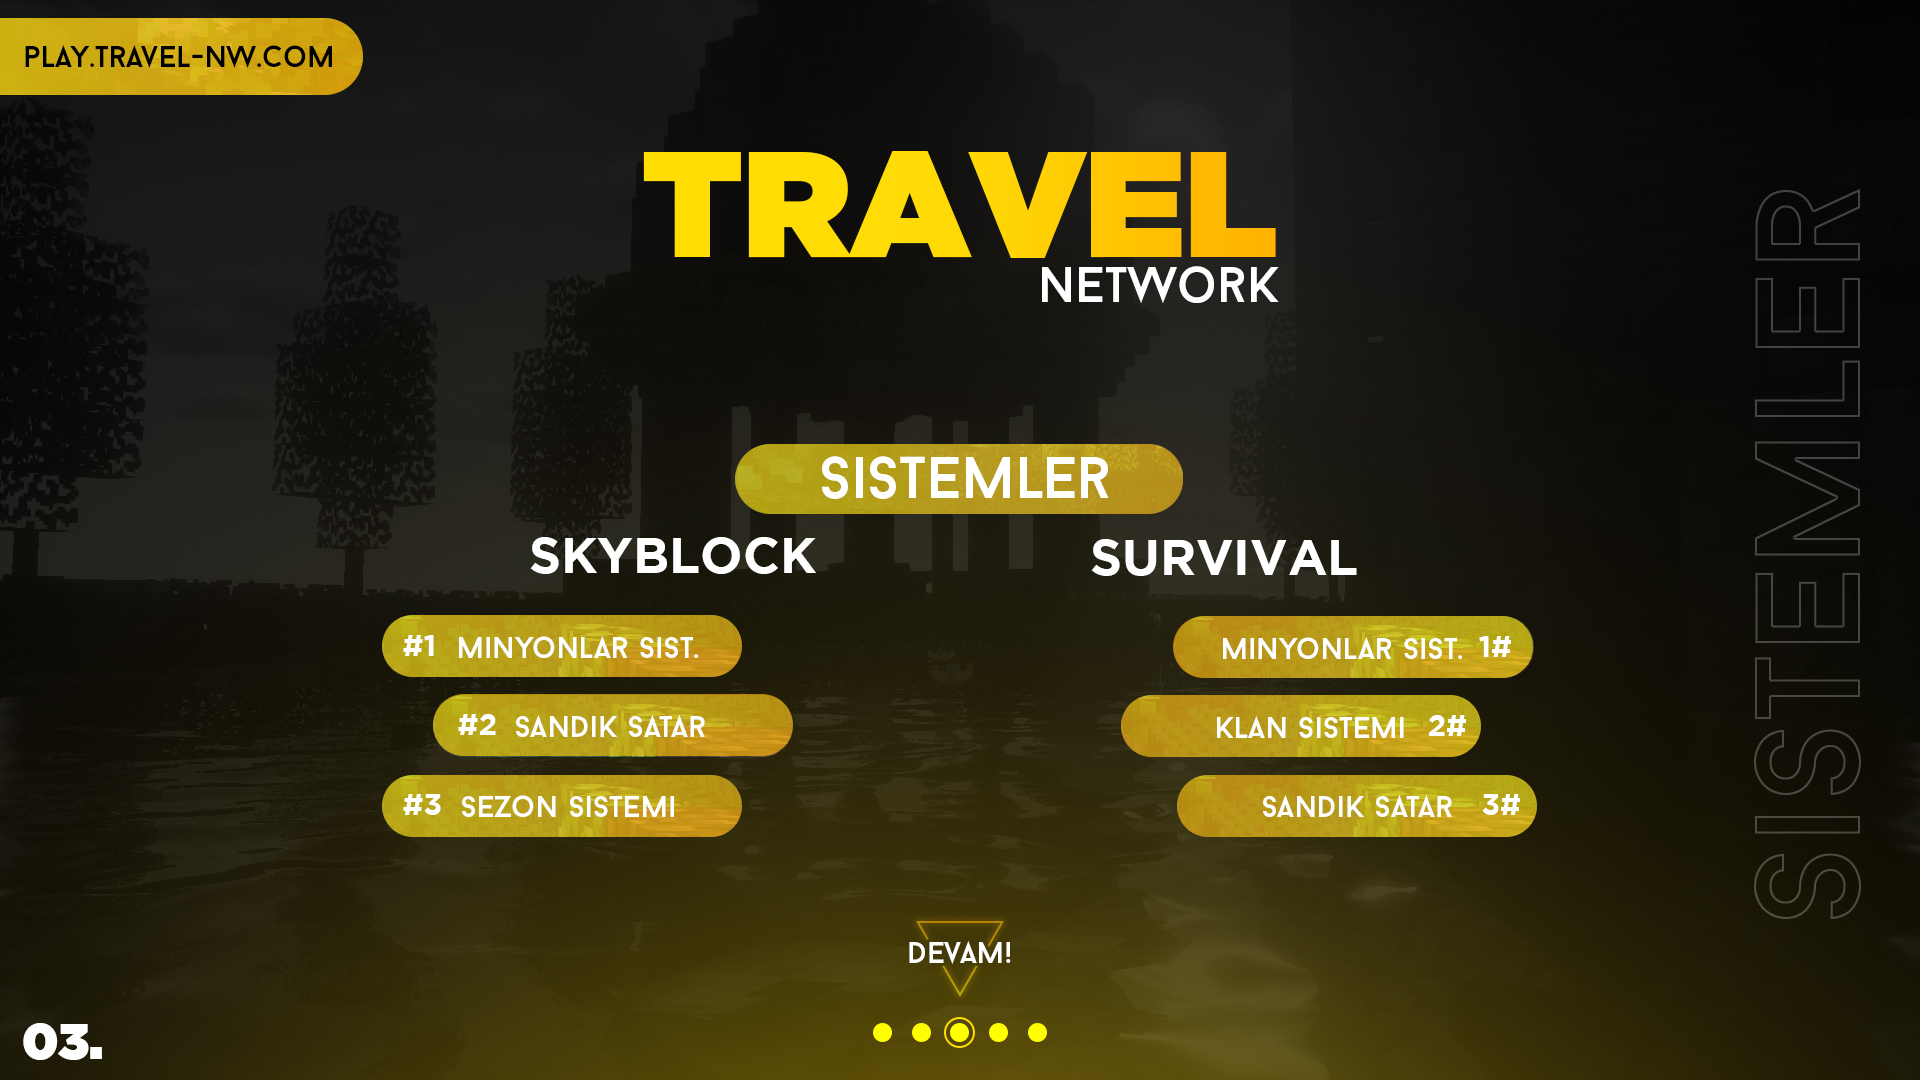 Travel NW Sayfa 4 Sistemler.jpg